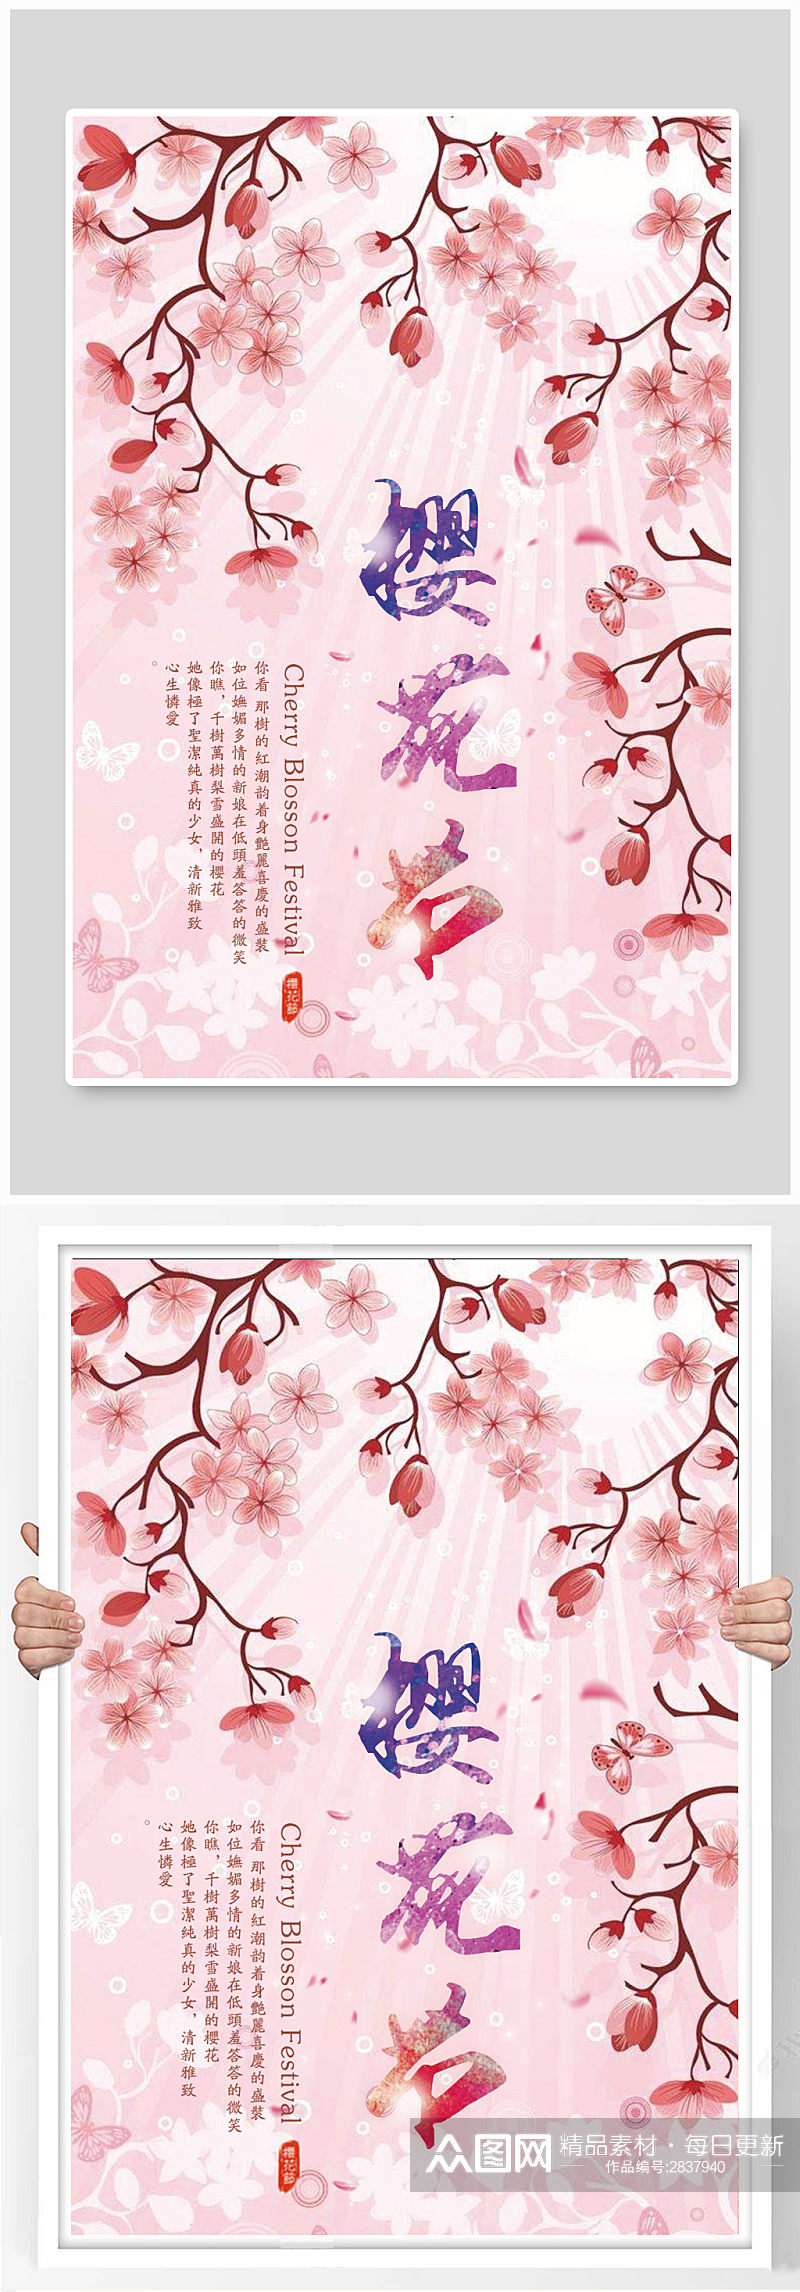 日系樱花节创意海报设计素材